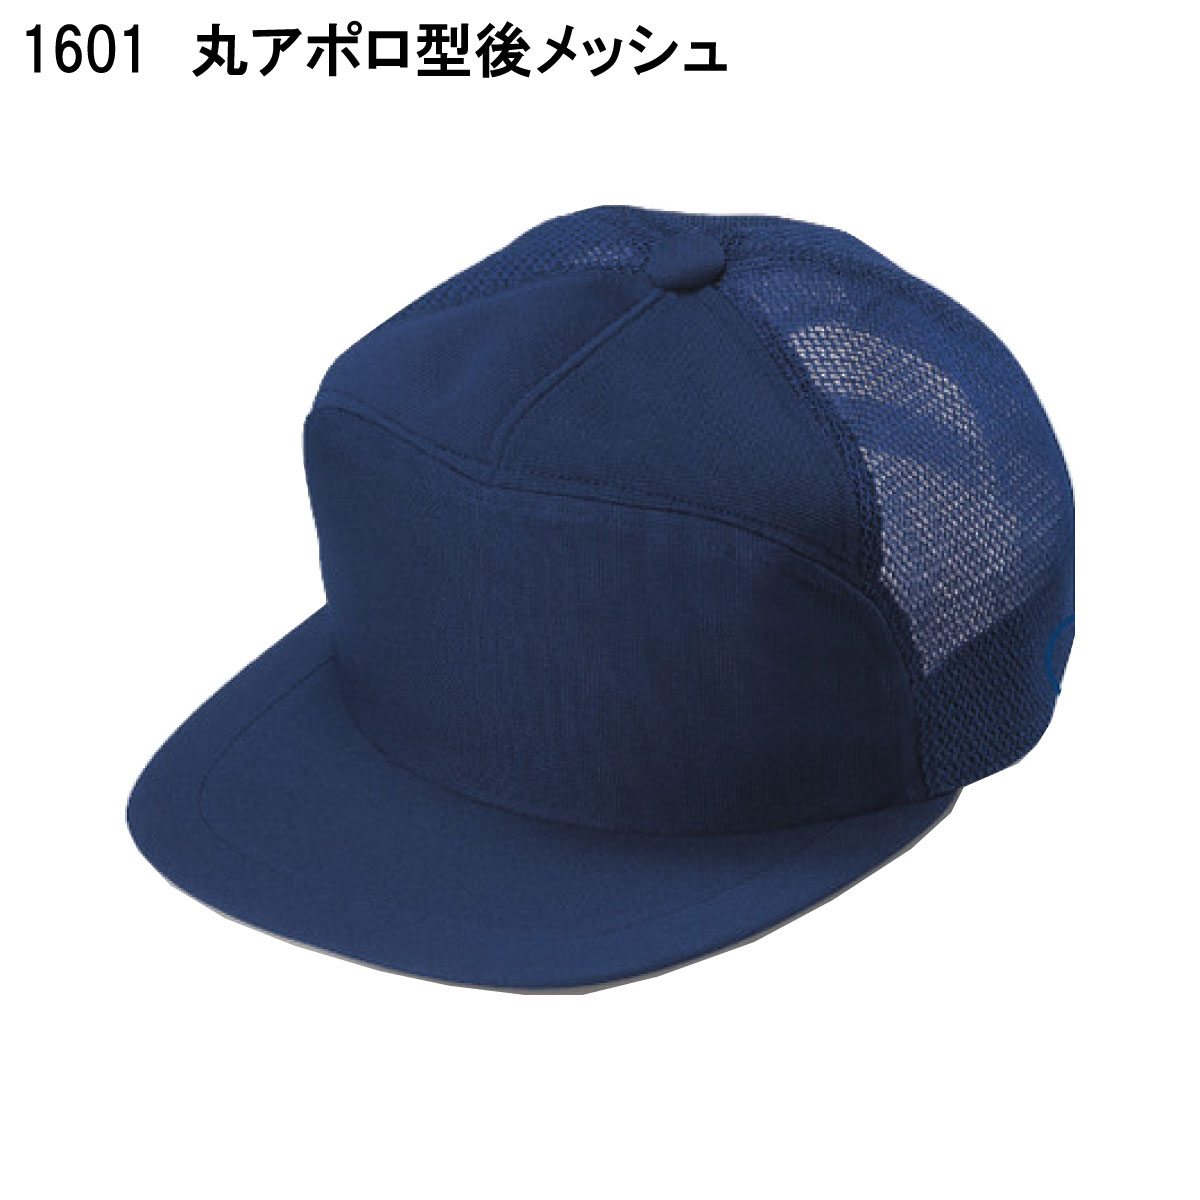 丸アポロ型後メッシュ 1601 M〜LL 倉敷製帽 ネービー